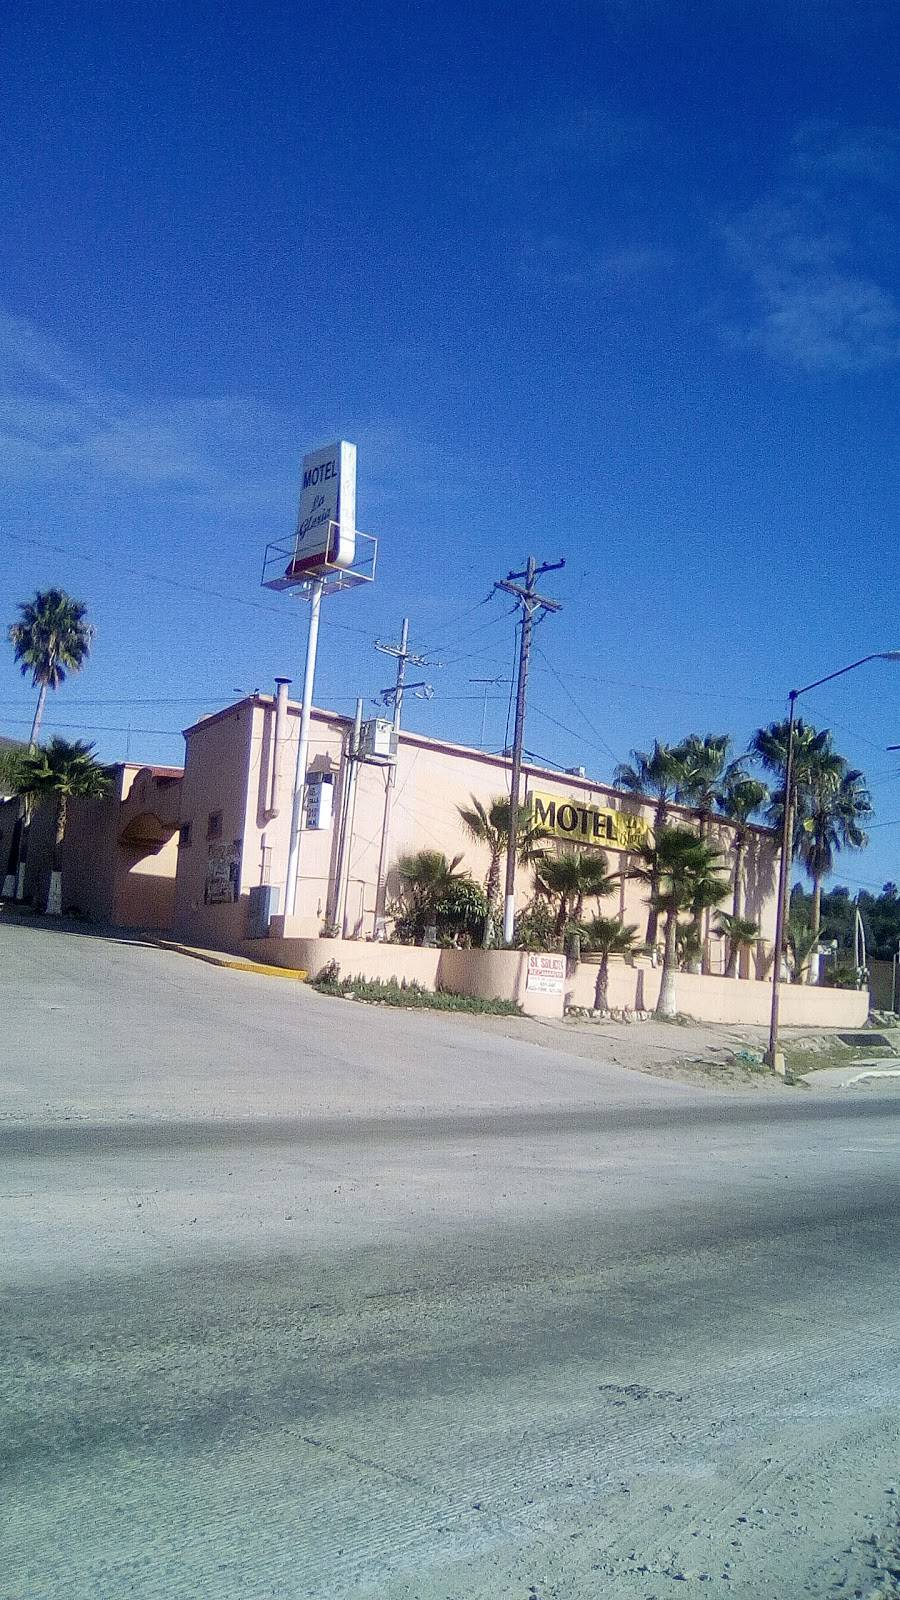 Motel La Gloria | Carretera Tijuana - Ensenada, La Joya, La Gloria, 22645 Tijuana, B.C., Mexico | Phone: 664 636 1096